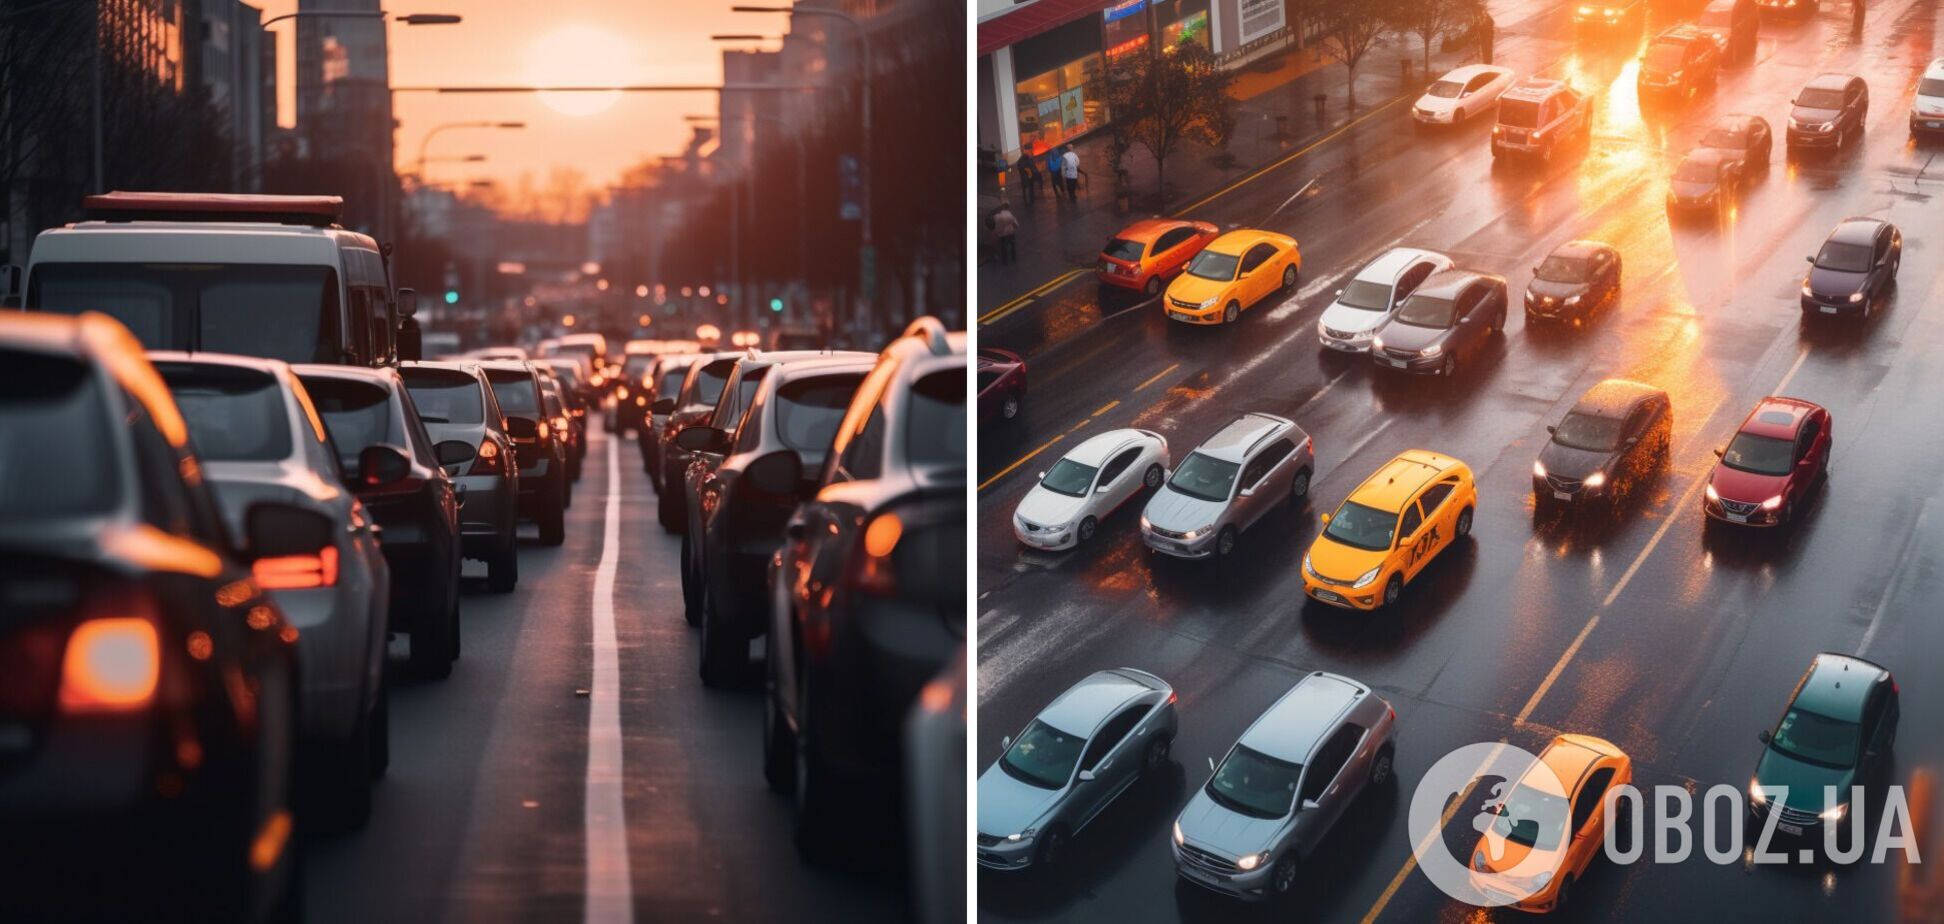 Действует круглосуточно: какое правило дорожного движения постоянно забывают водители